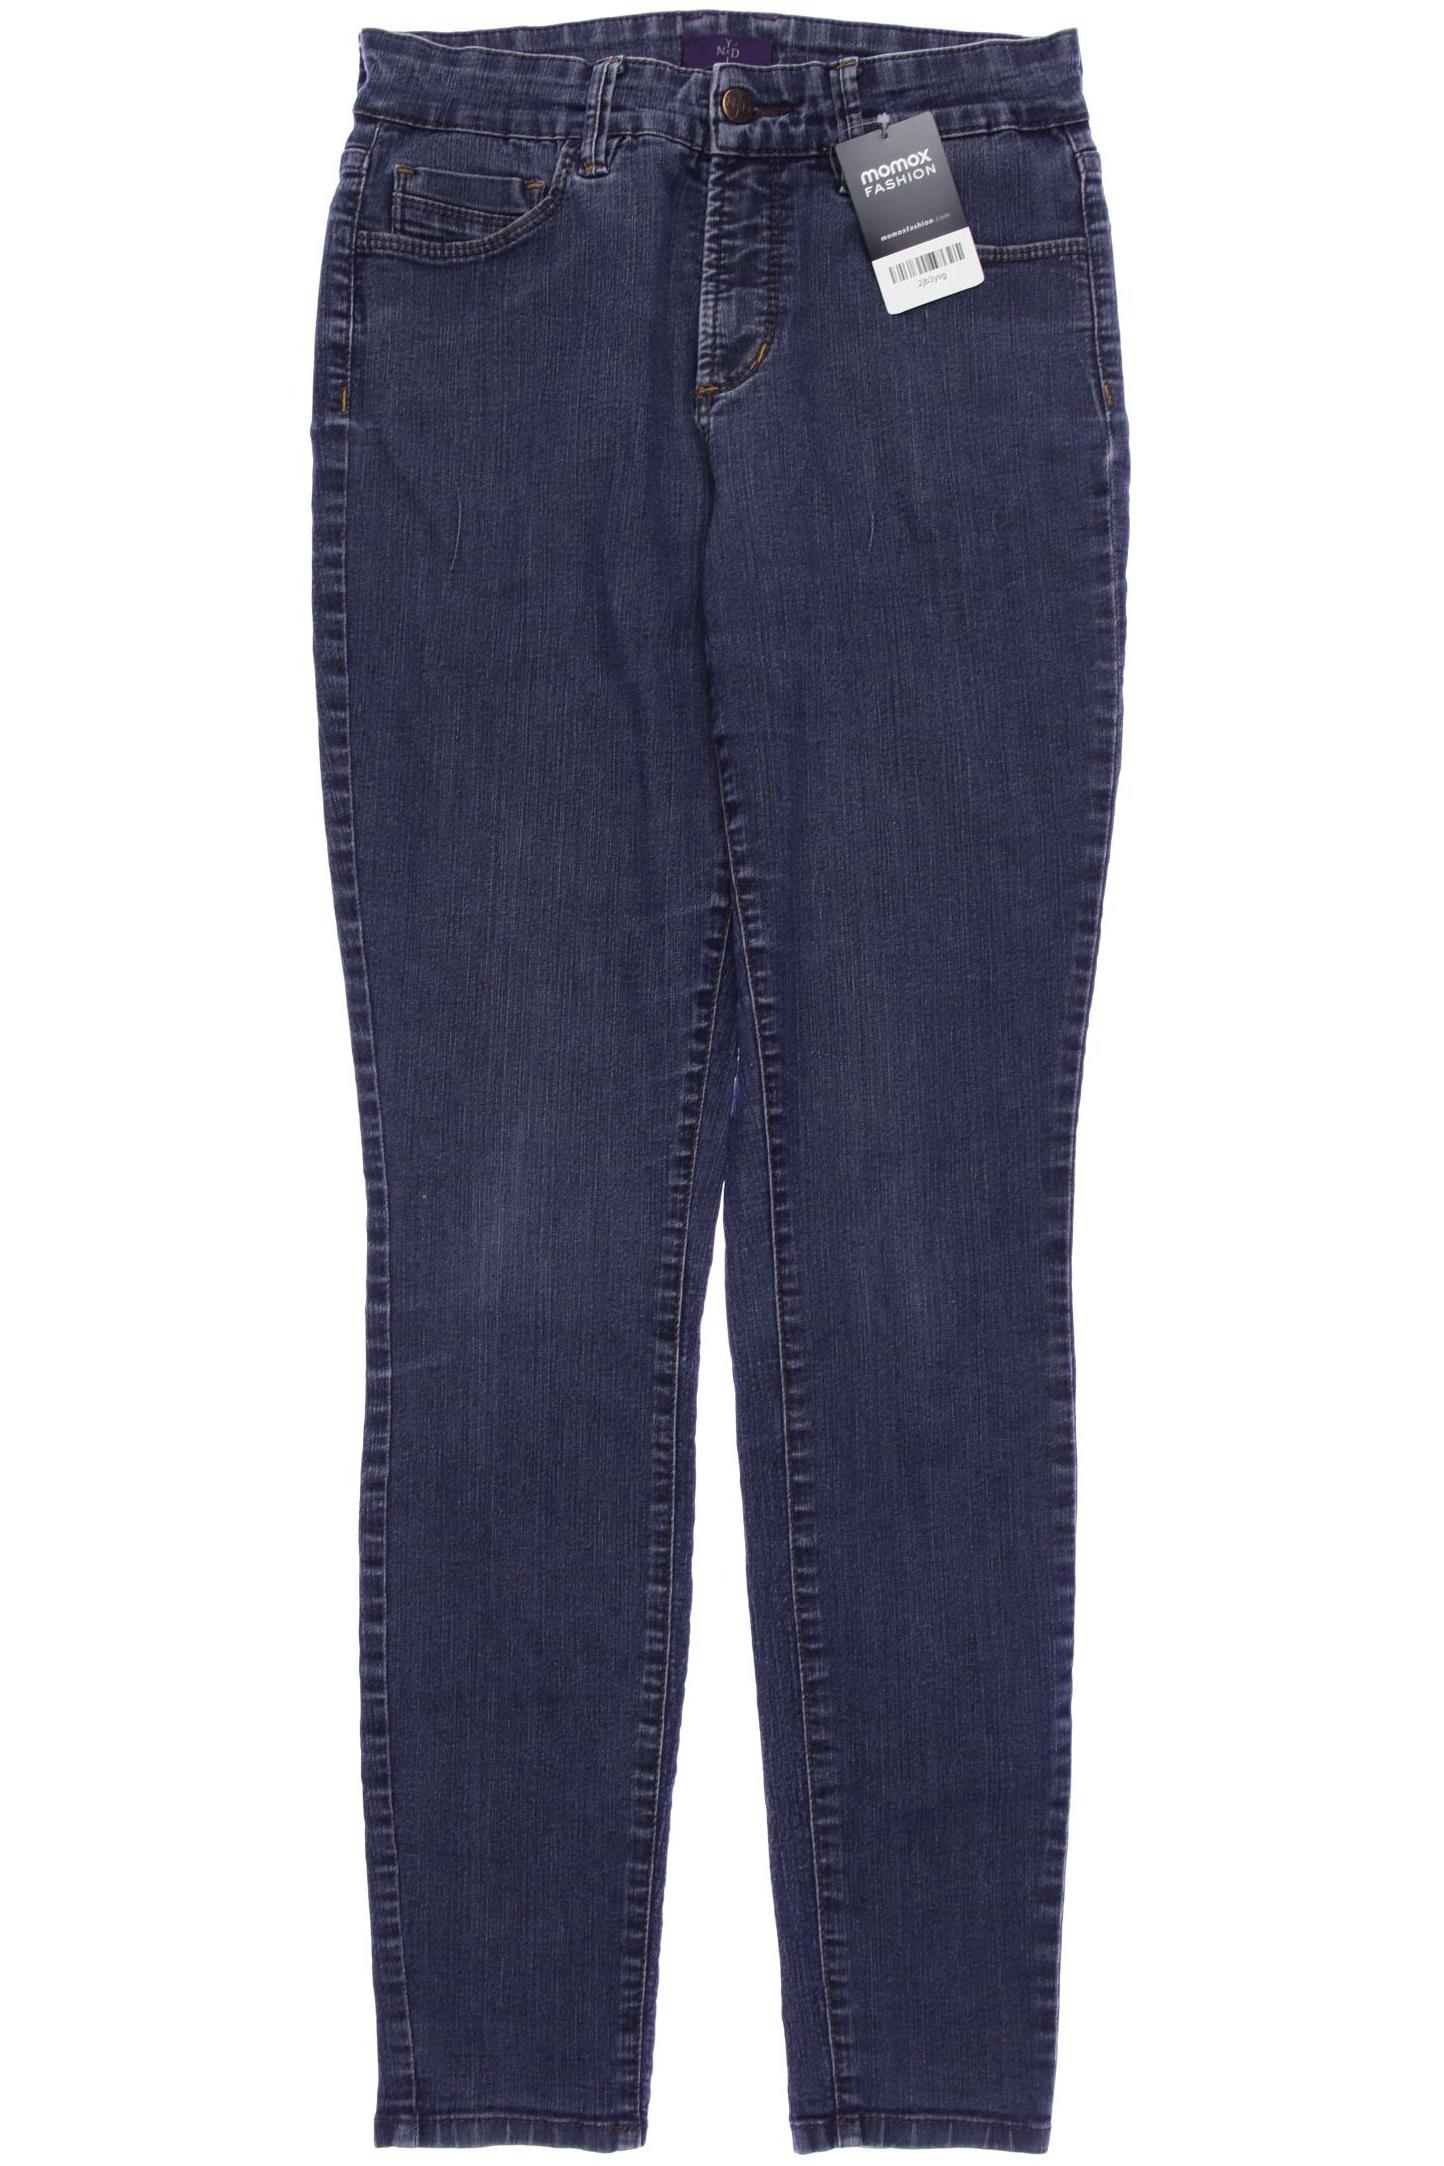 NYDJ Damen Jeans, marineblau von Nydj